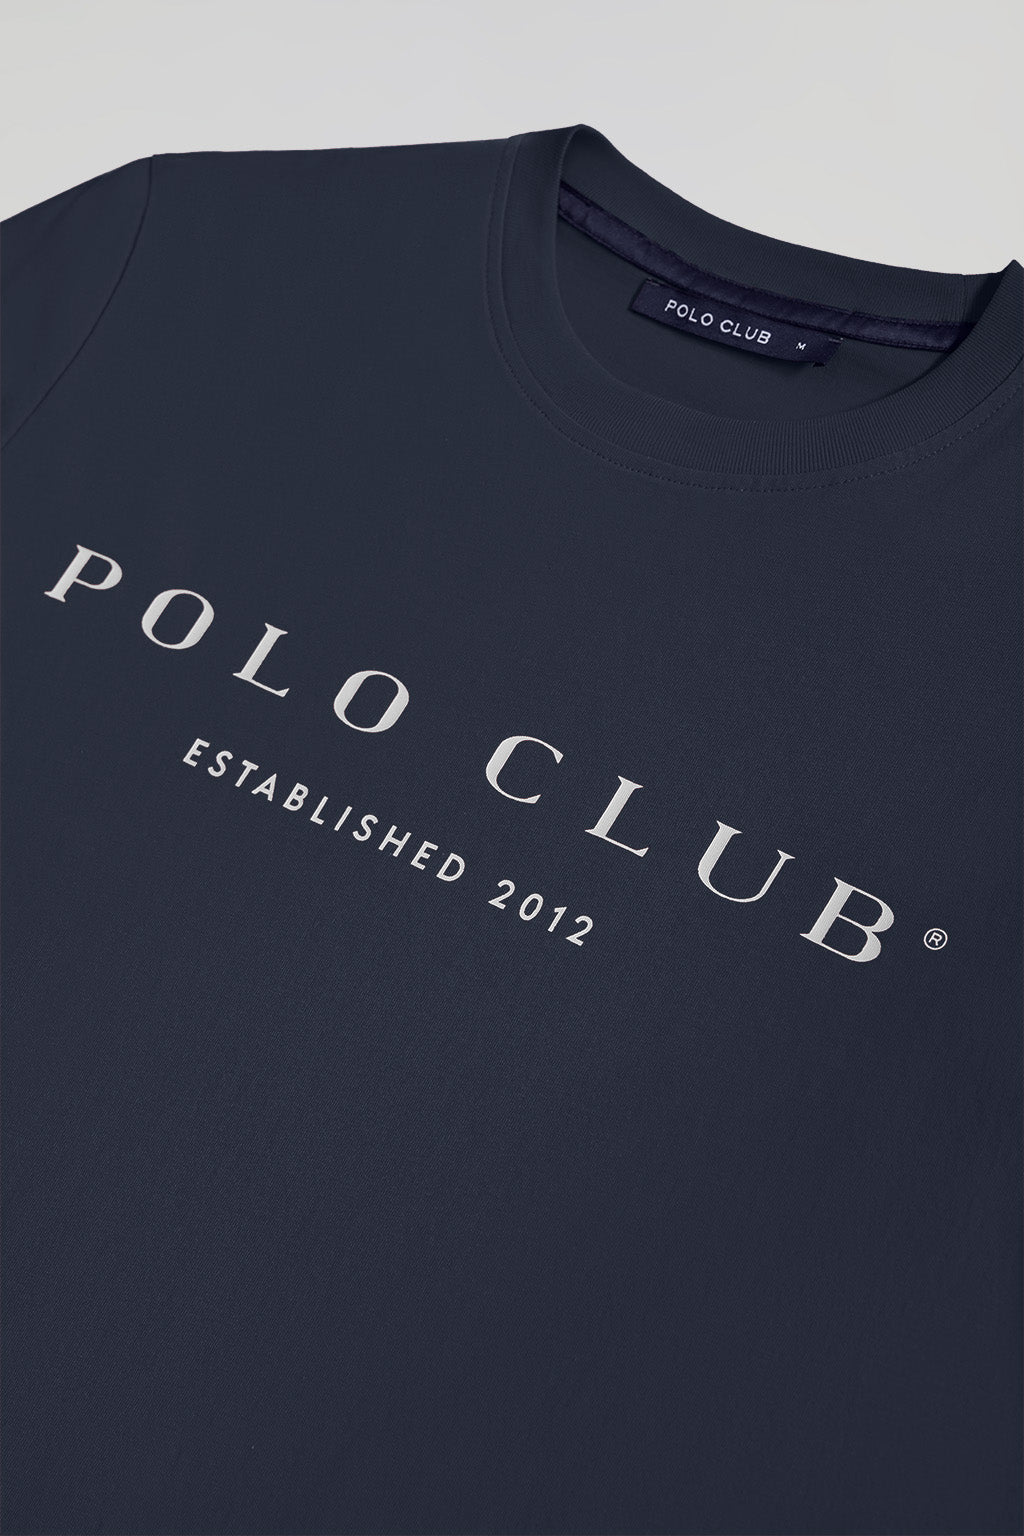 Básicos de Polo Club - Primeriti: Blog